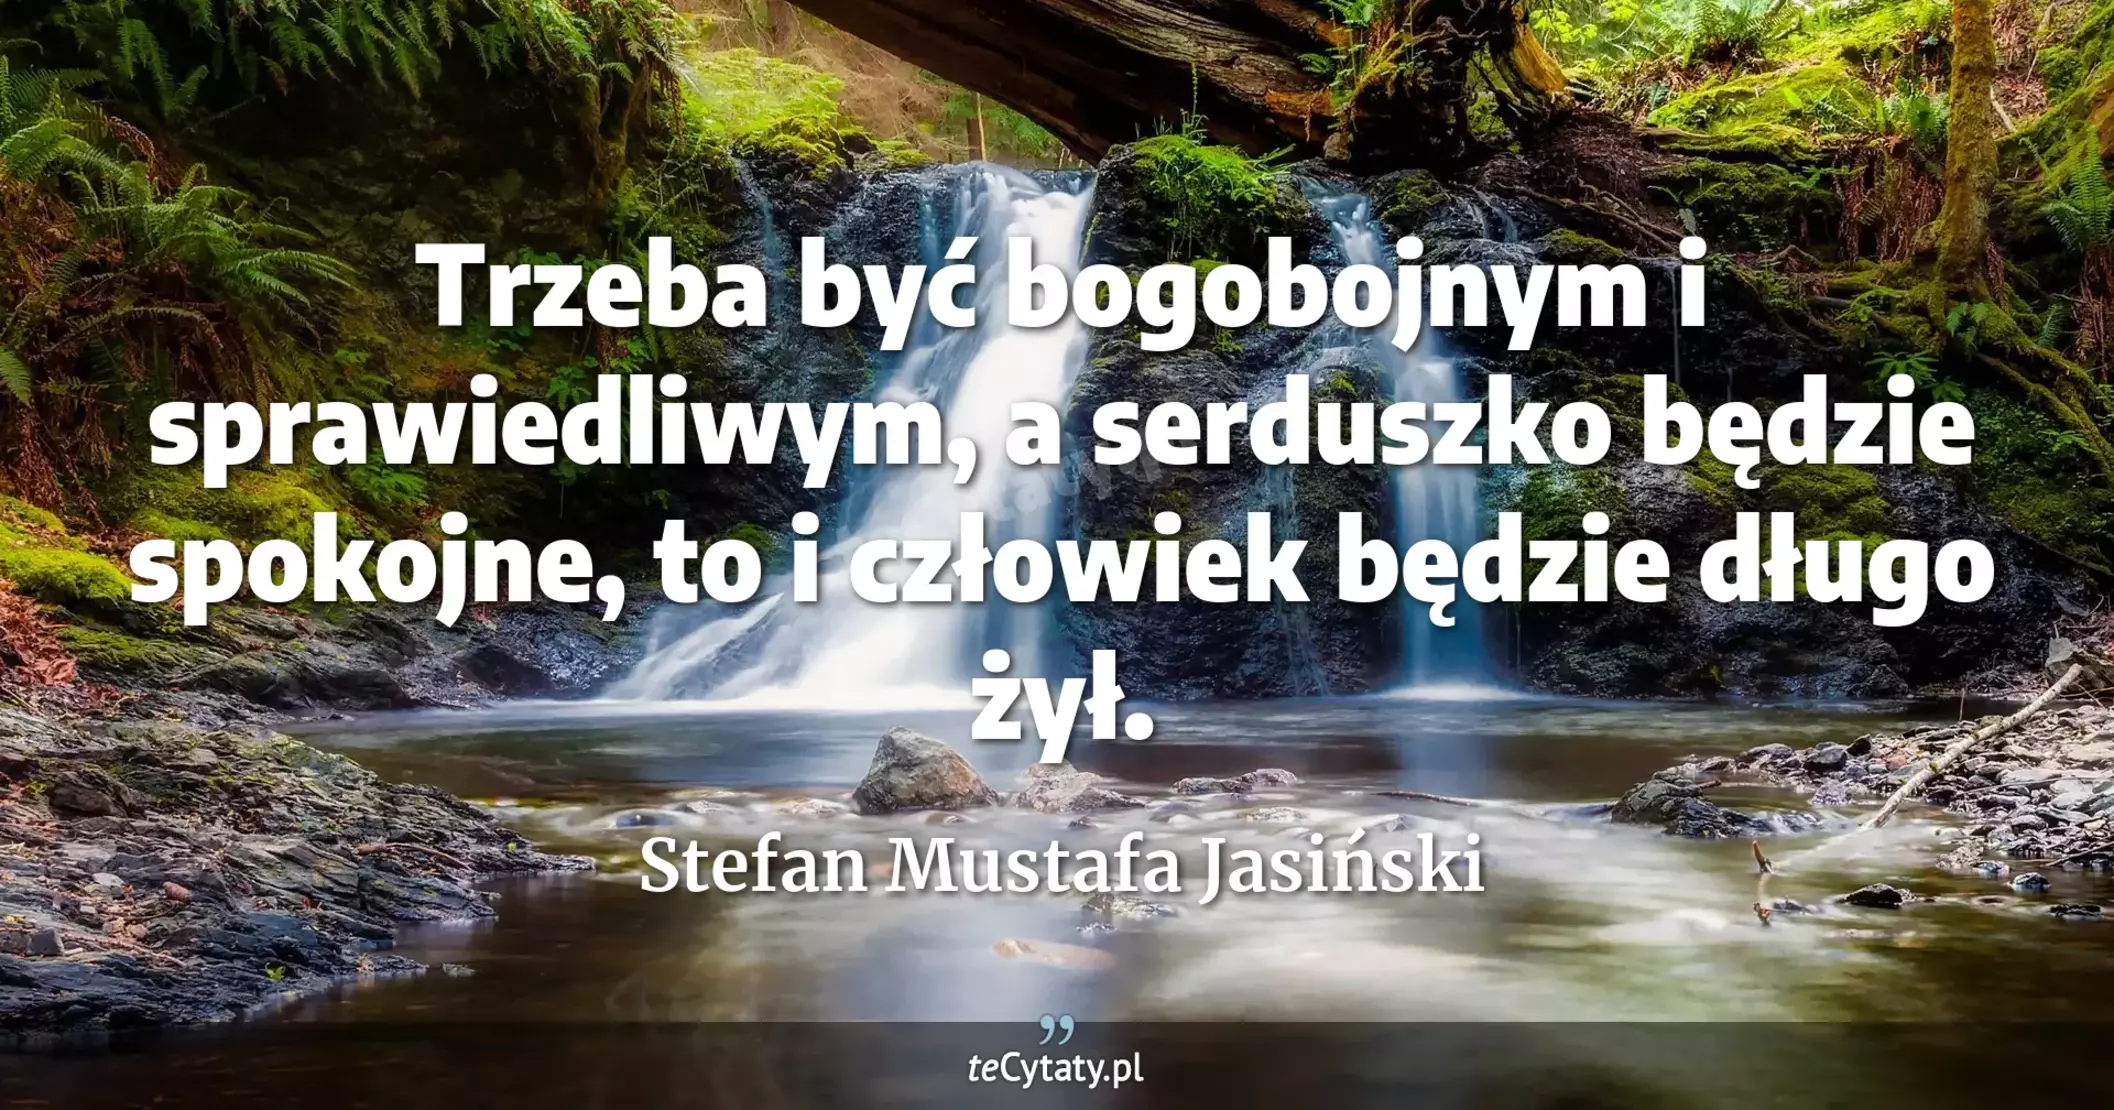 Trzeba być bogobojnym i sprawiedliwym, a serduszko będzie spokojne, to i człowiek będzie długo żył. - Stefan Mustafa Jasiński